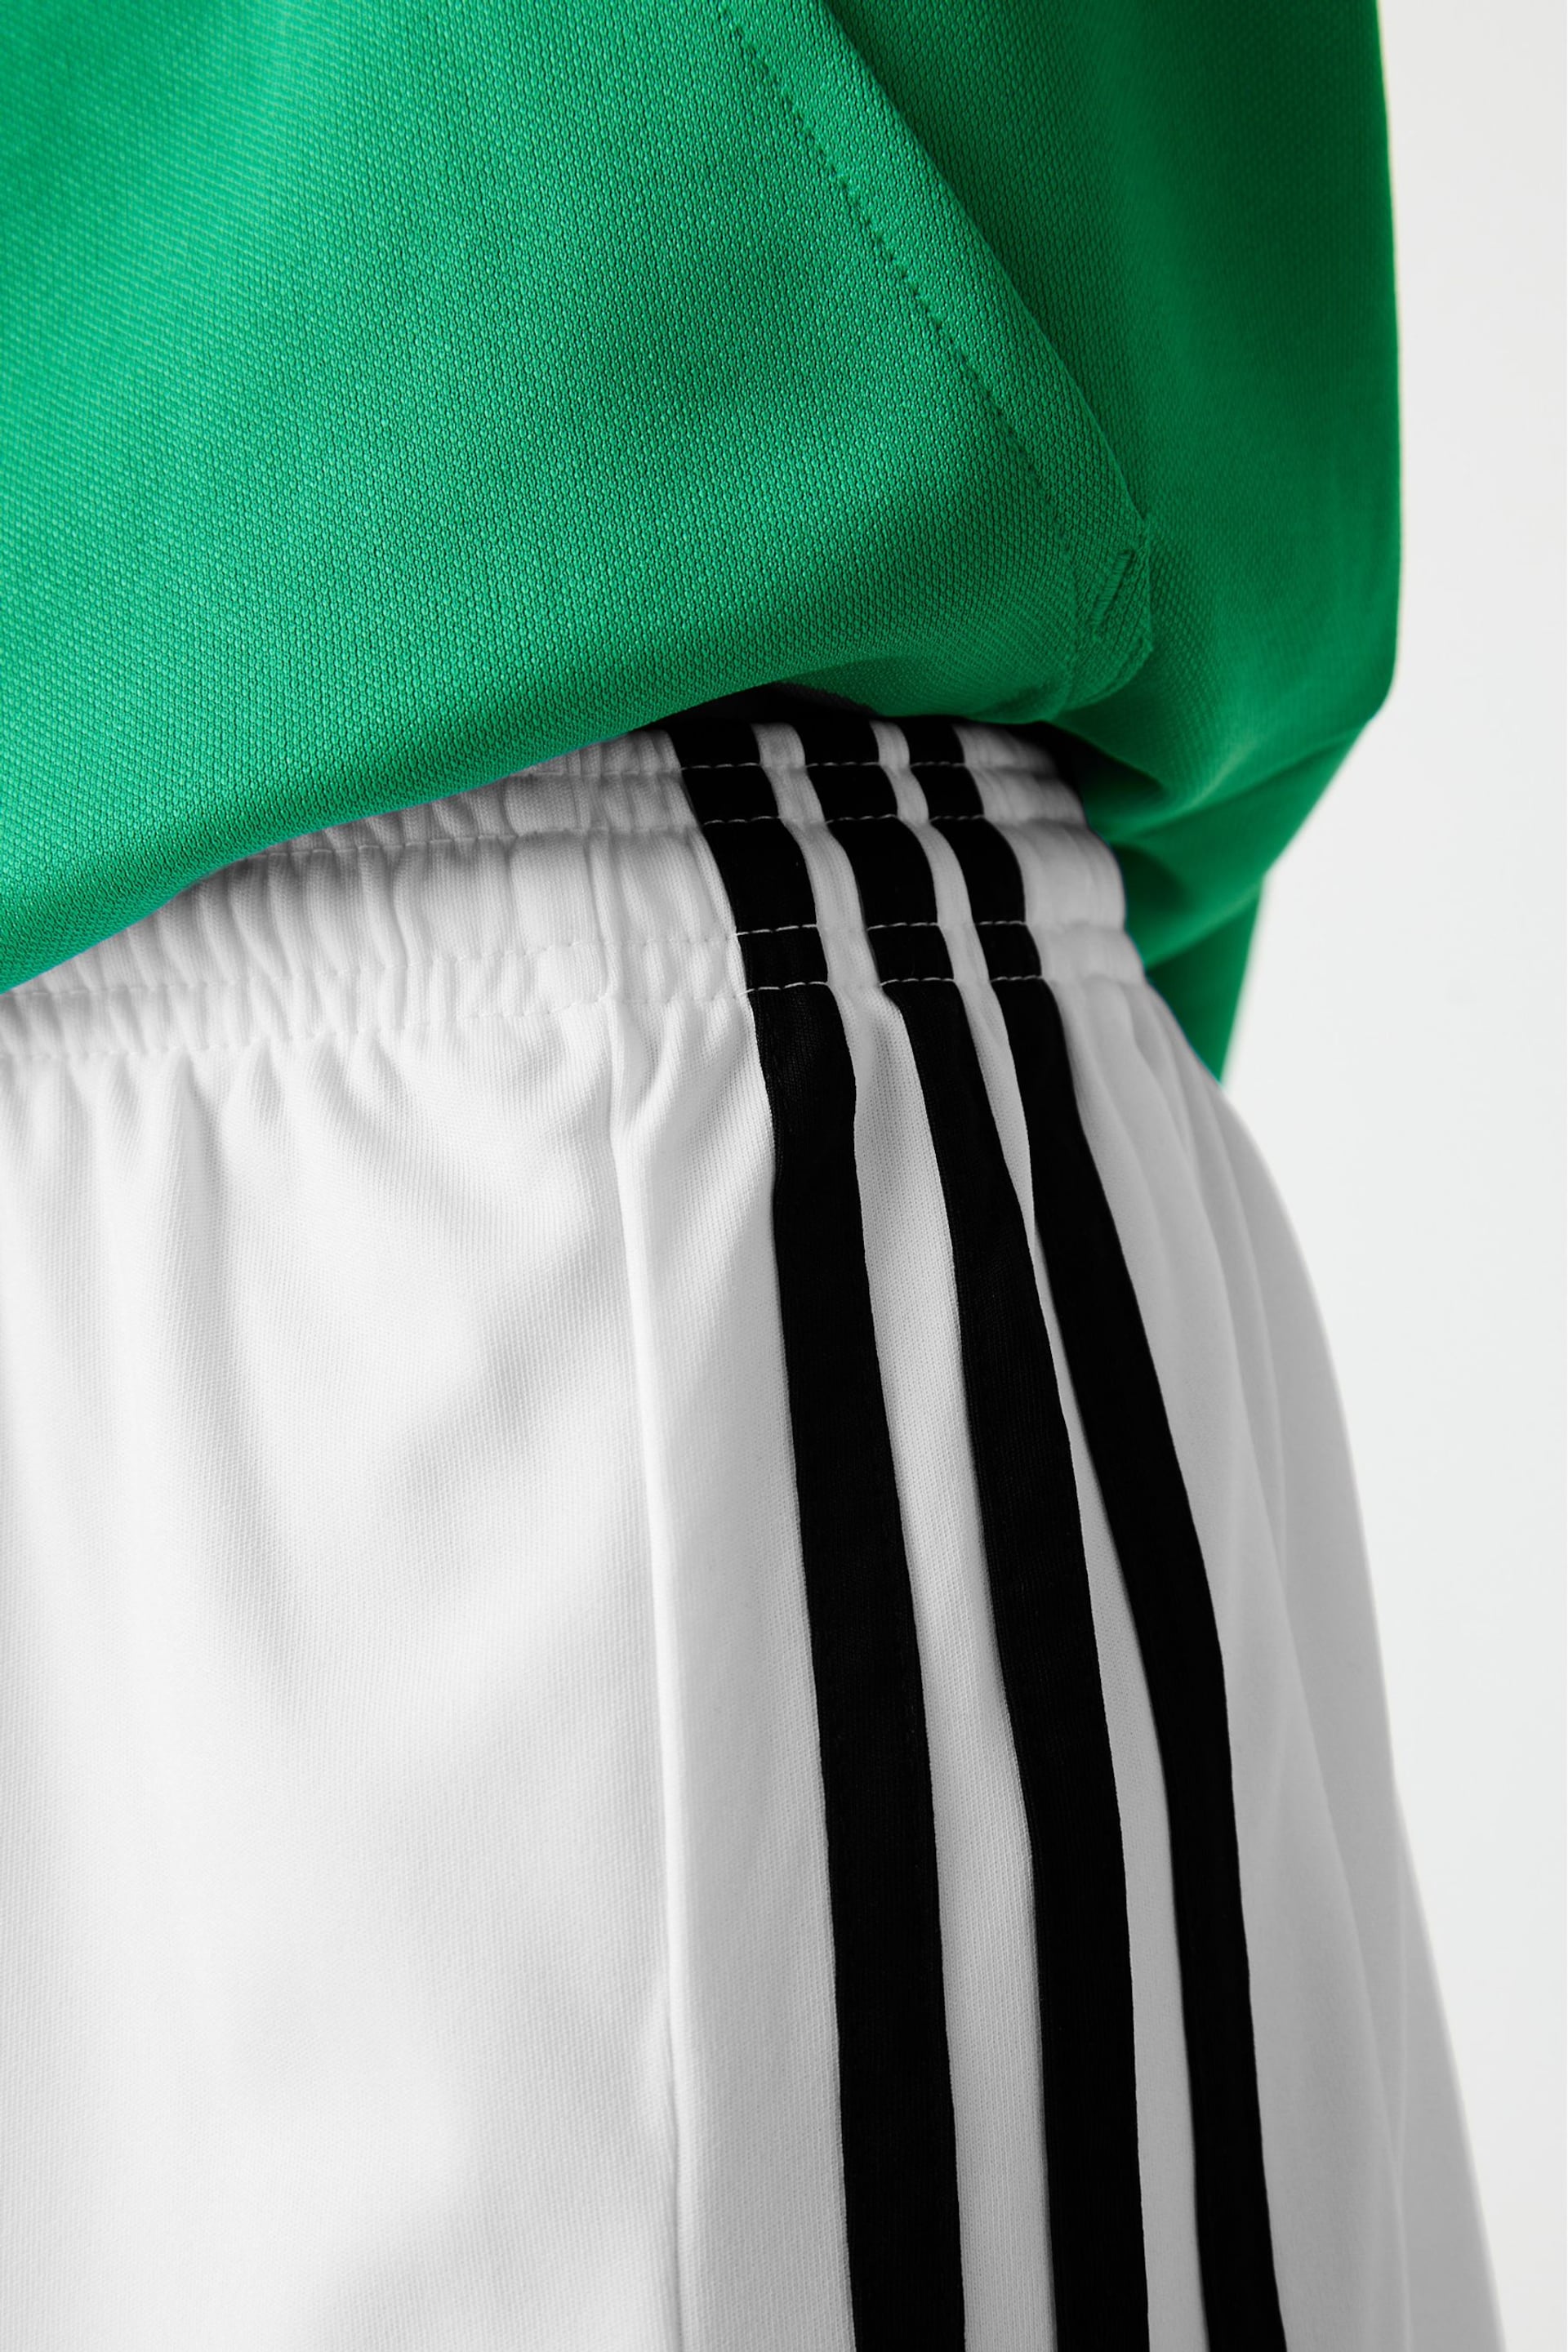 adidas White Squadra 21 Shorts - Image 4 of 10